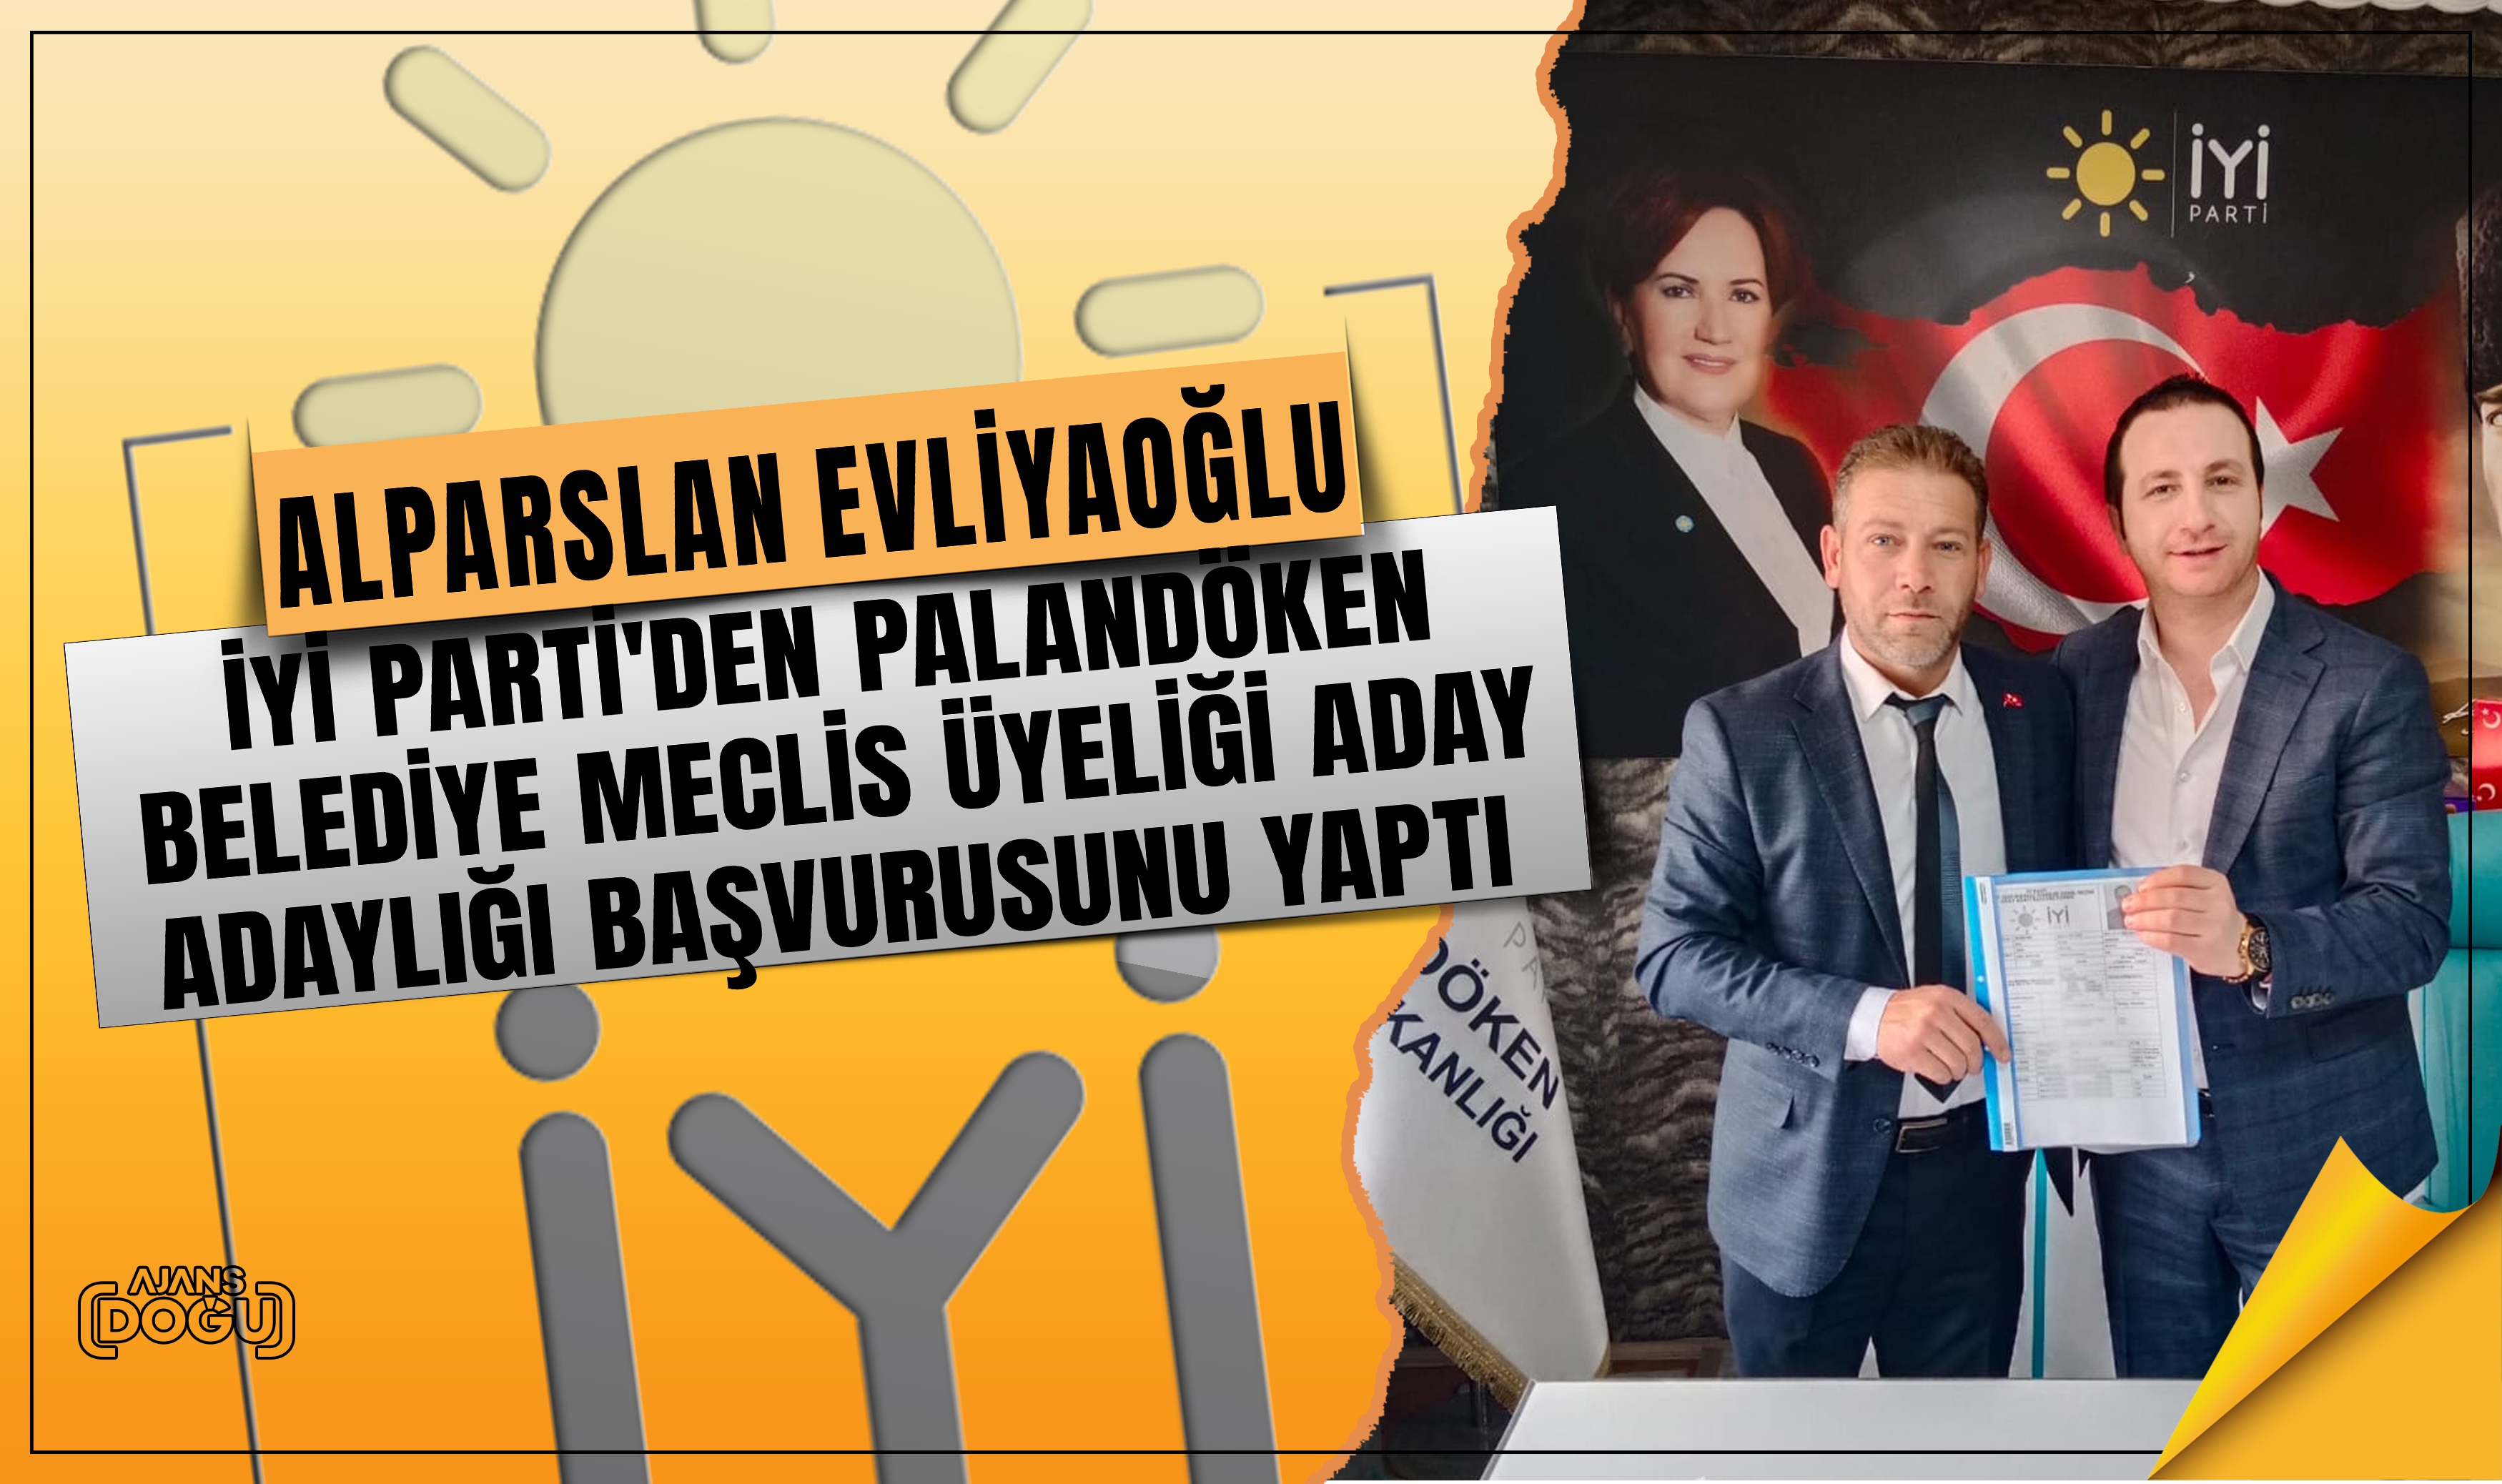 Alparslan Evliyaoğlu İYİ Parti'den Palandöken ilçesi  belediye meclis üyeliği aday adaylığı başvurusunu yaptı